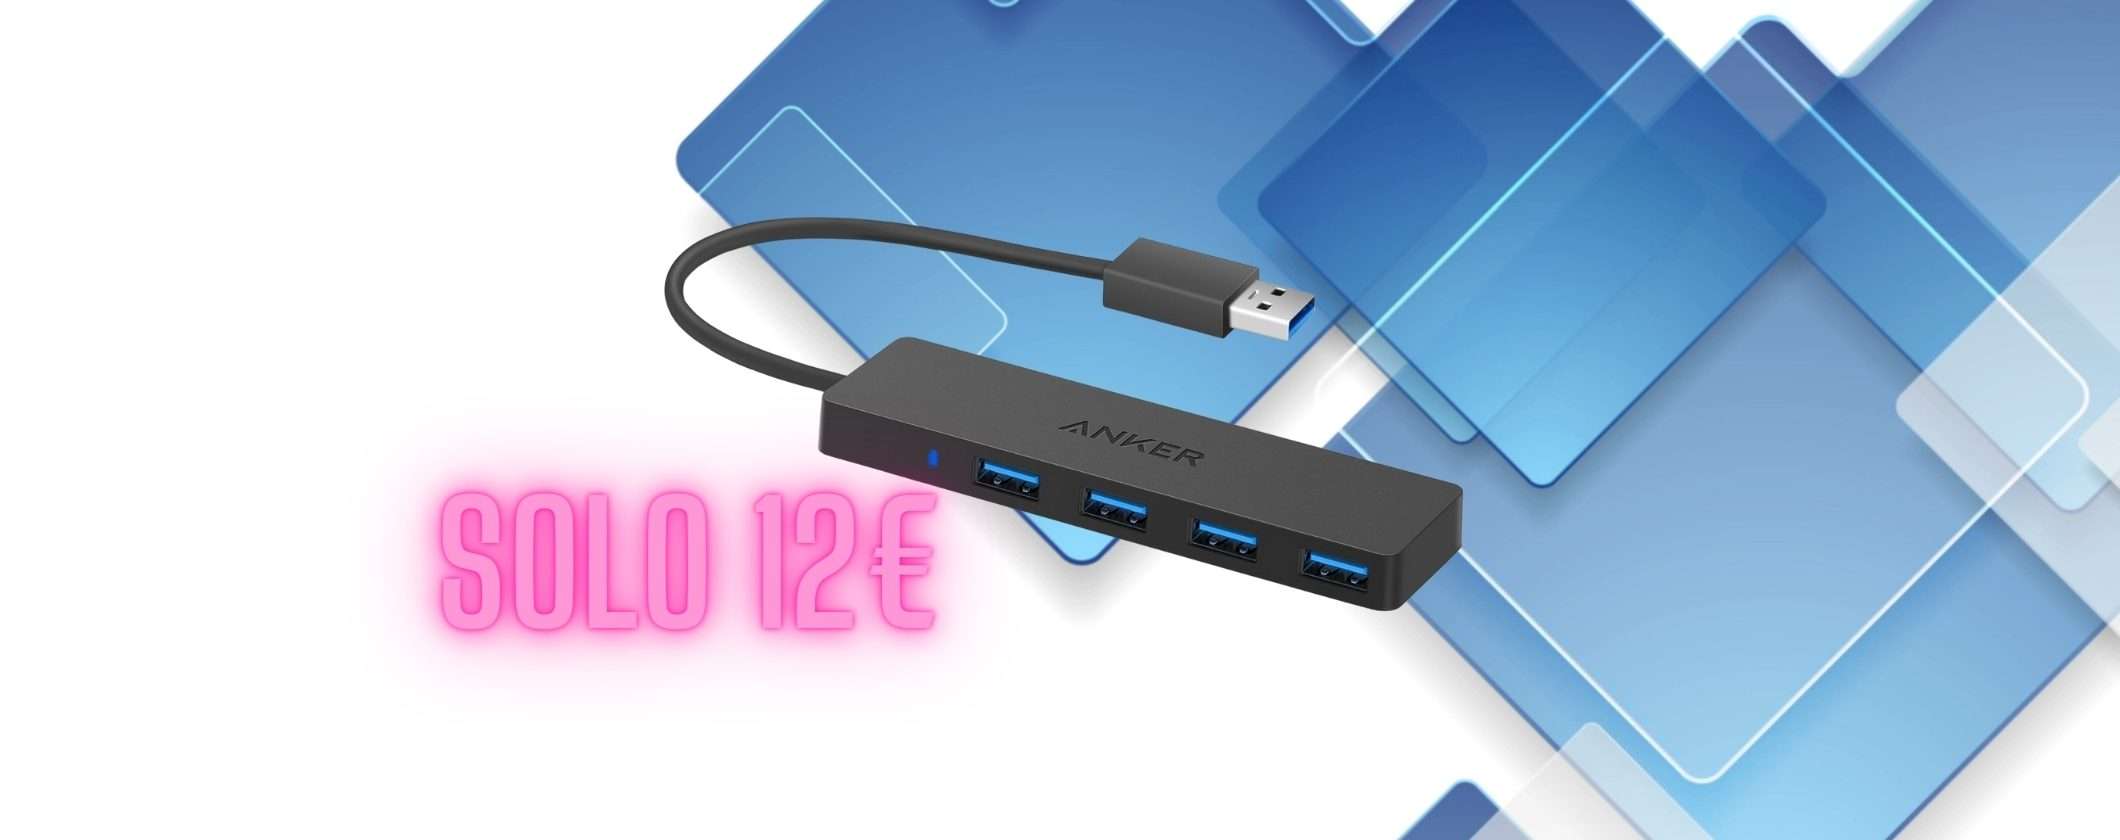 Hub Anker USB-A 4 PORTE a soli 12€ su Amazon, fai l'affare